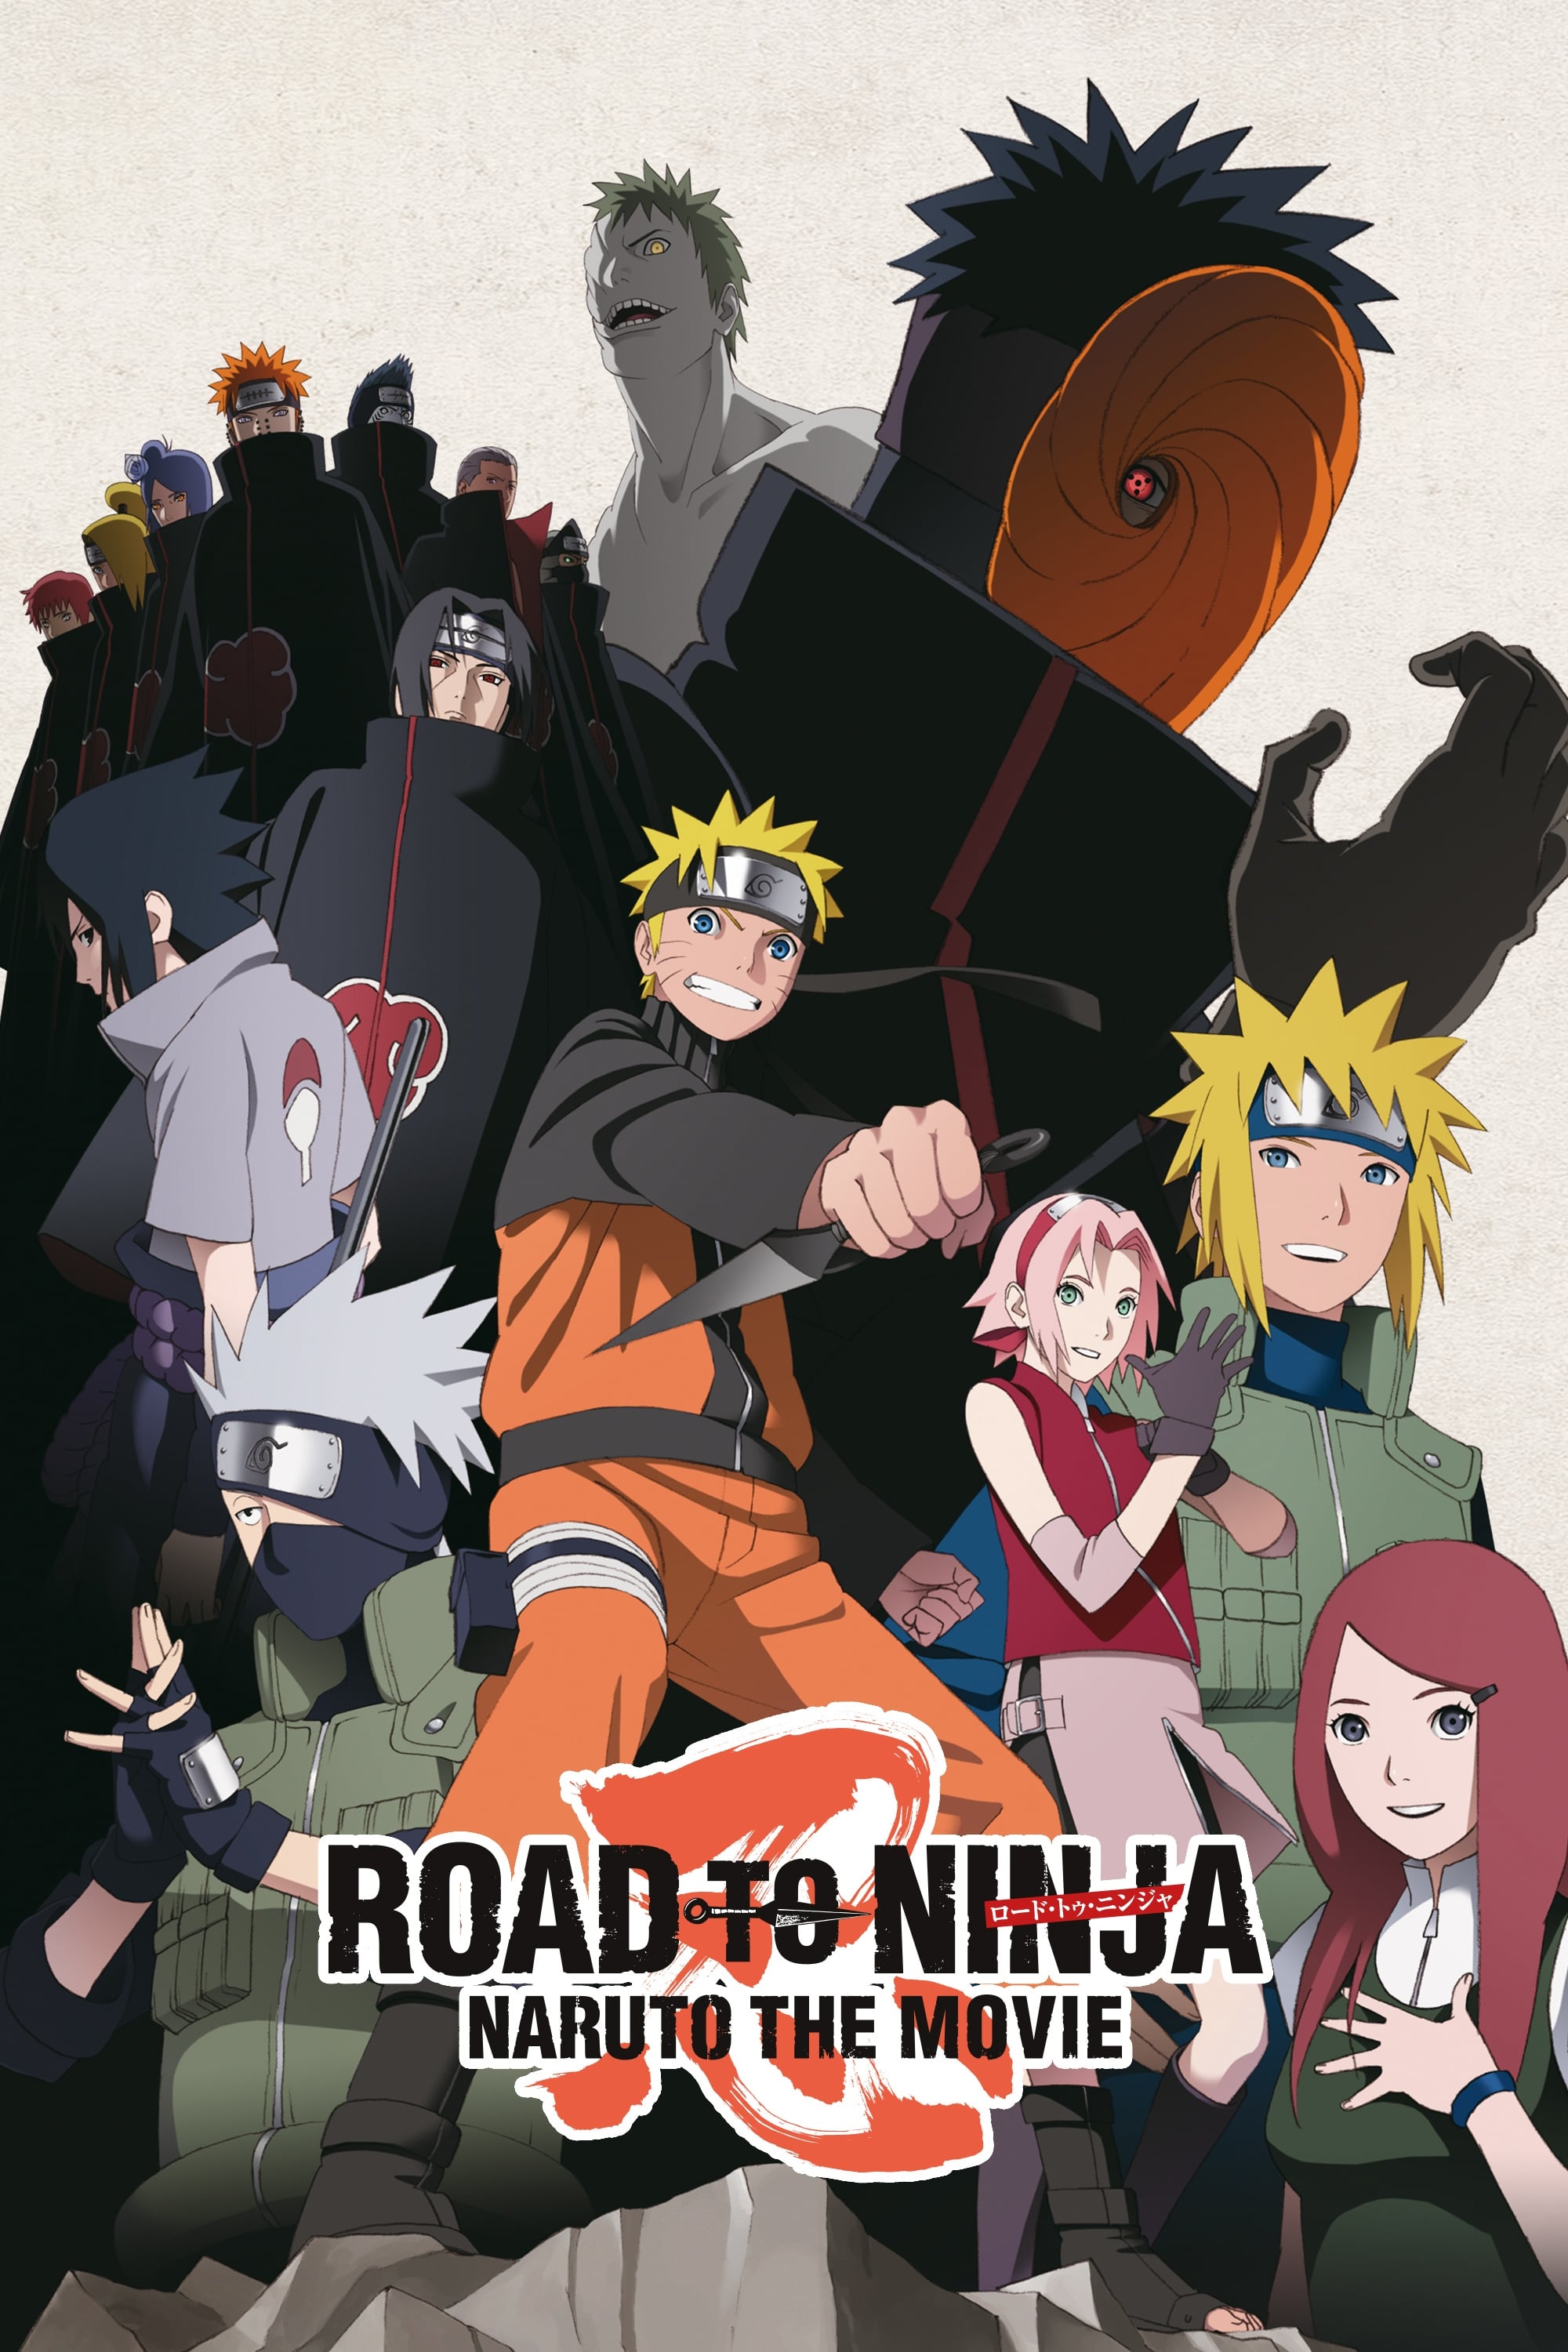 Naruto Shippuden O Filme: O Caminho Ninja